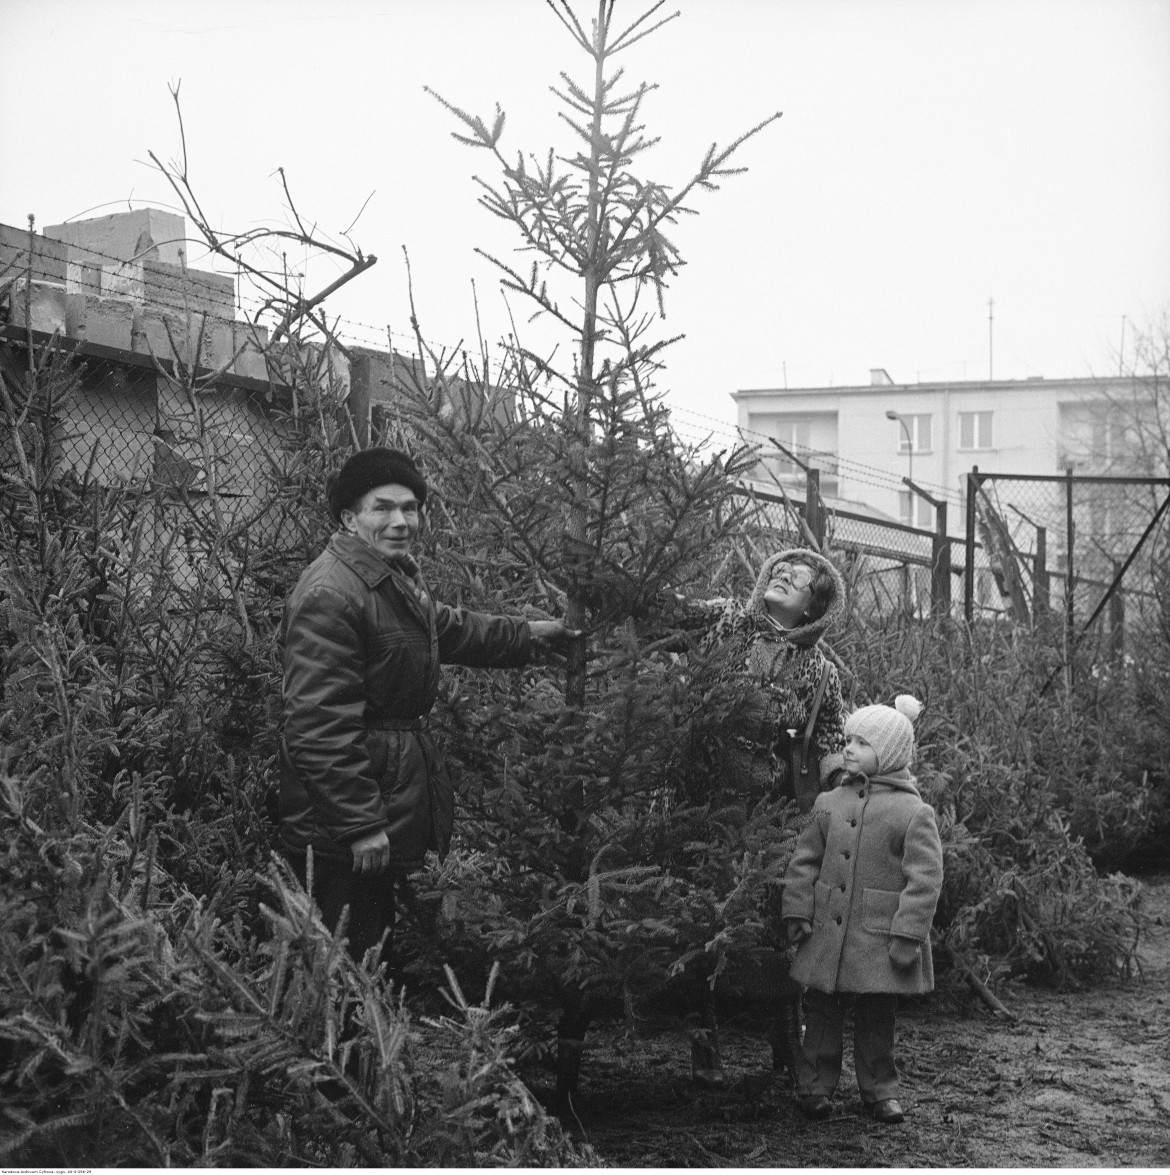 Sprzedaż choinek na bazarze przed Halą Mirowską. Kobieta z dzieckiem ogląda drzewko, Warszawa, 1979 / Narodowe Archiwum Cyfrowe